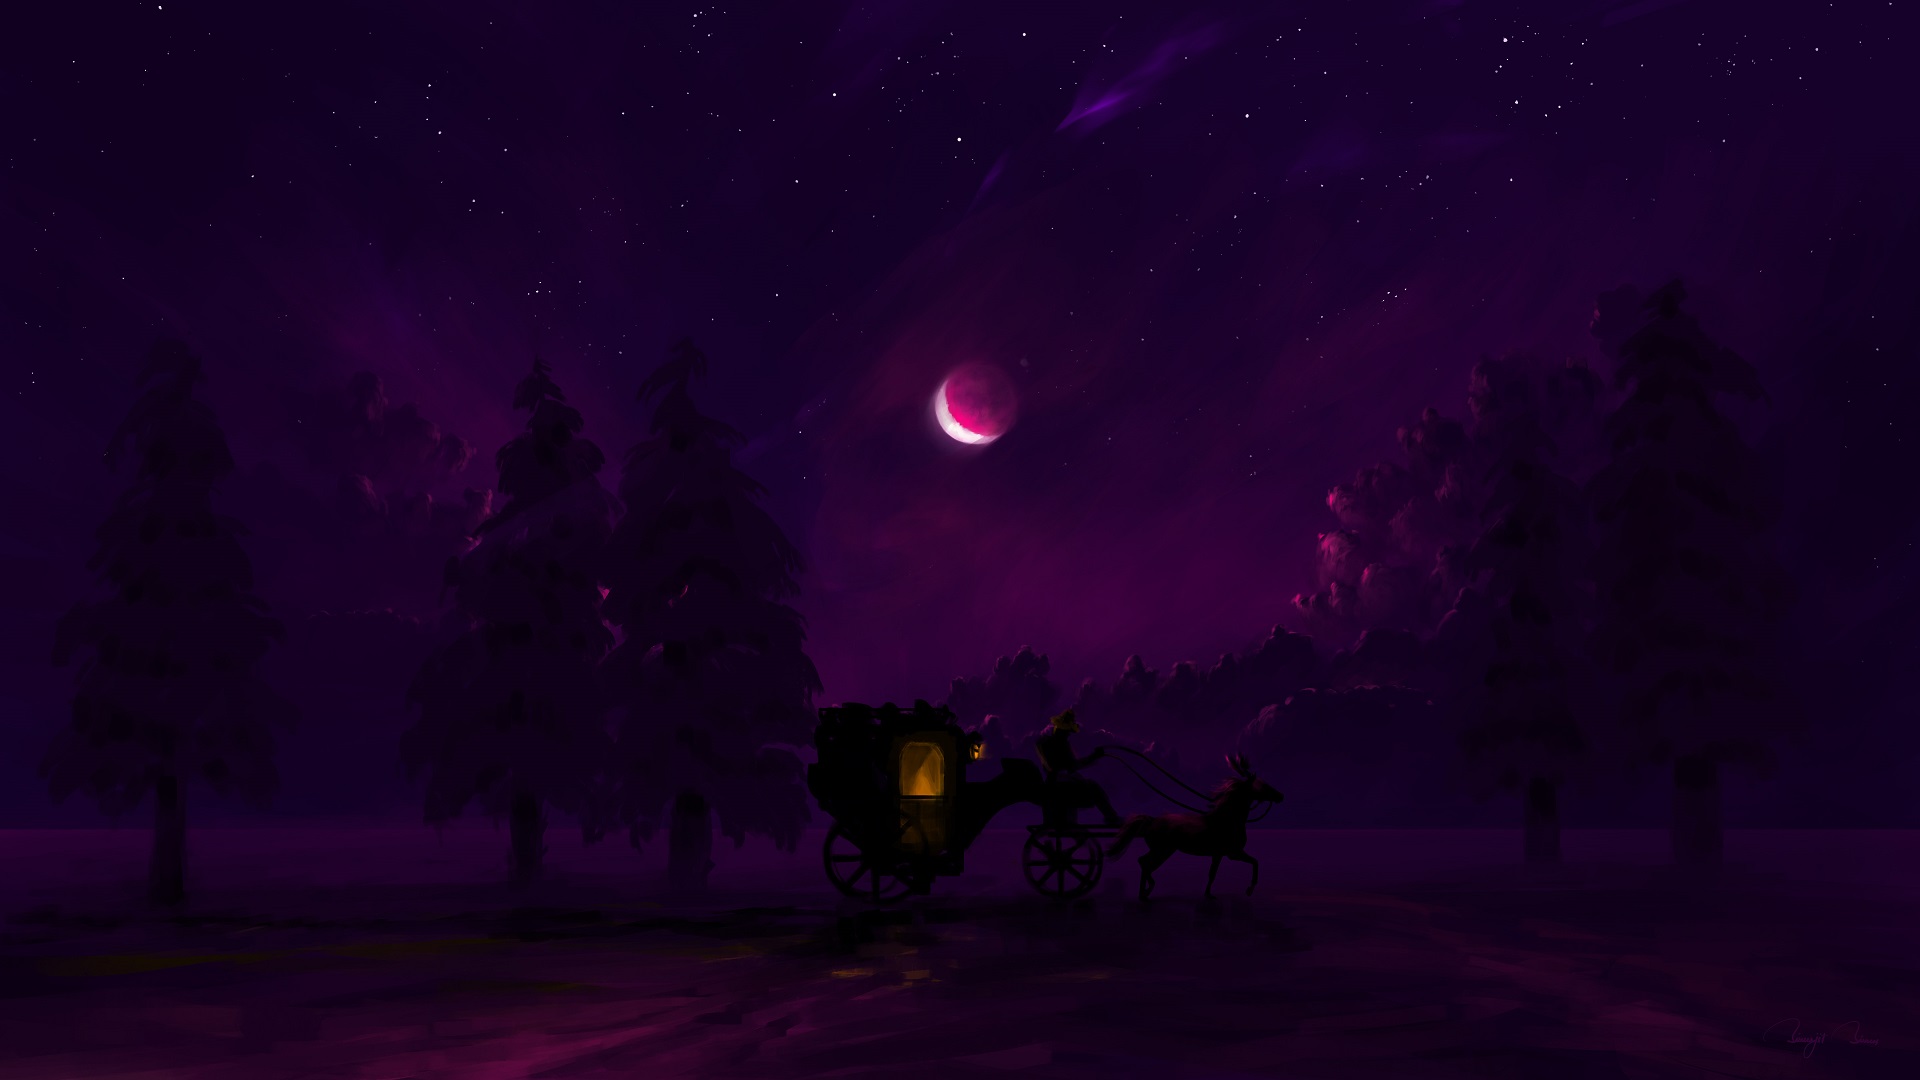 BisBiswas Digital Art Carriage Horse Forest Moon Lantern Stars 1920x1080